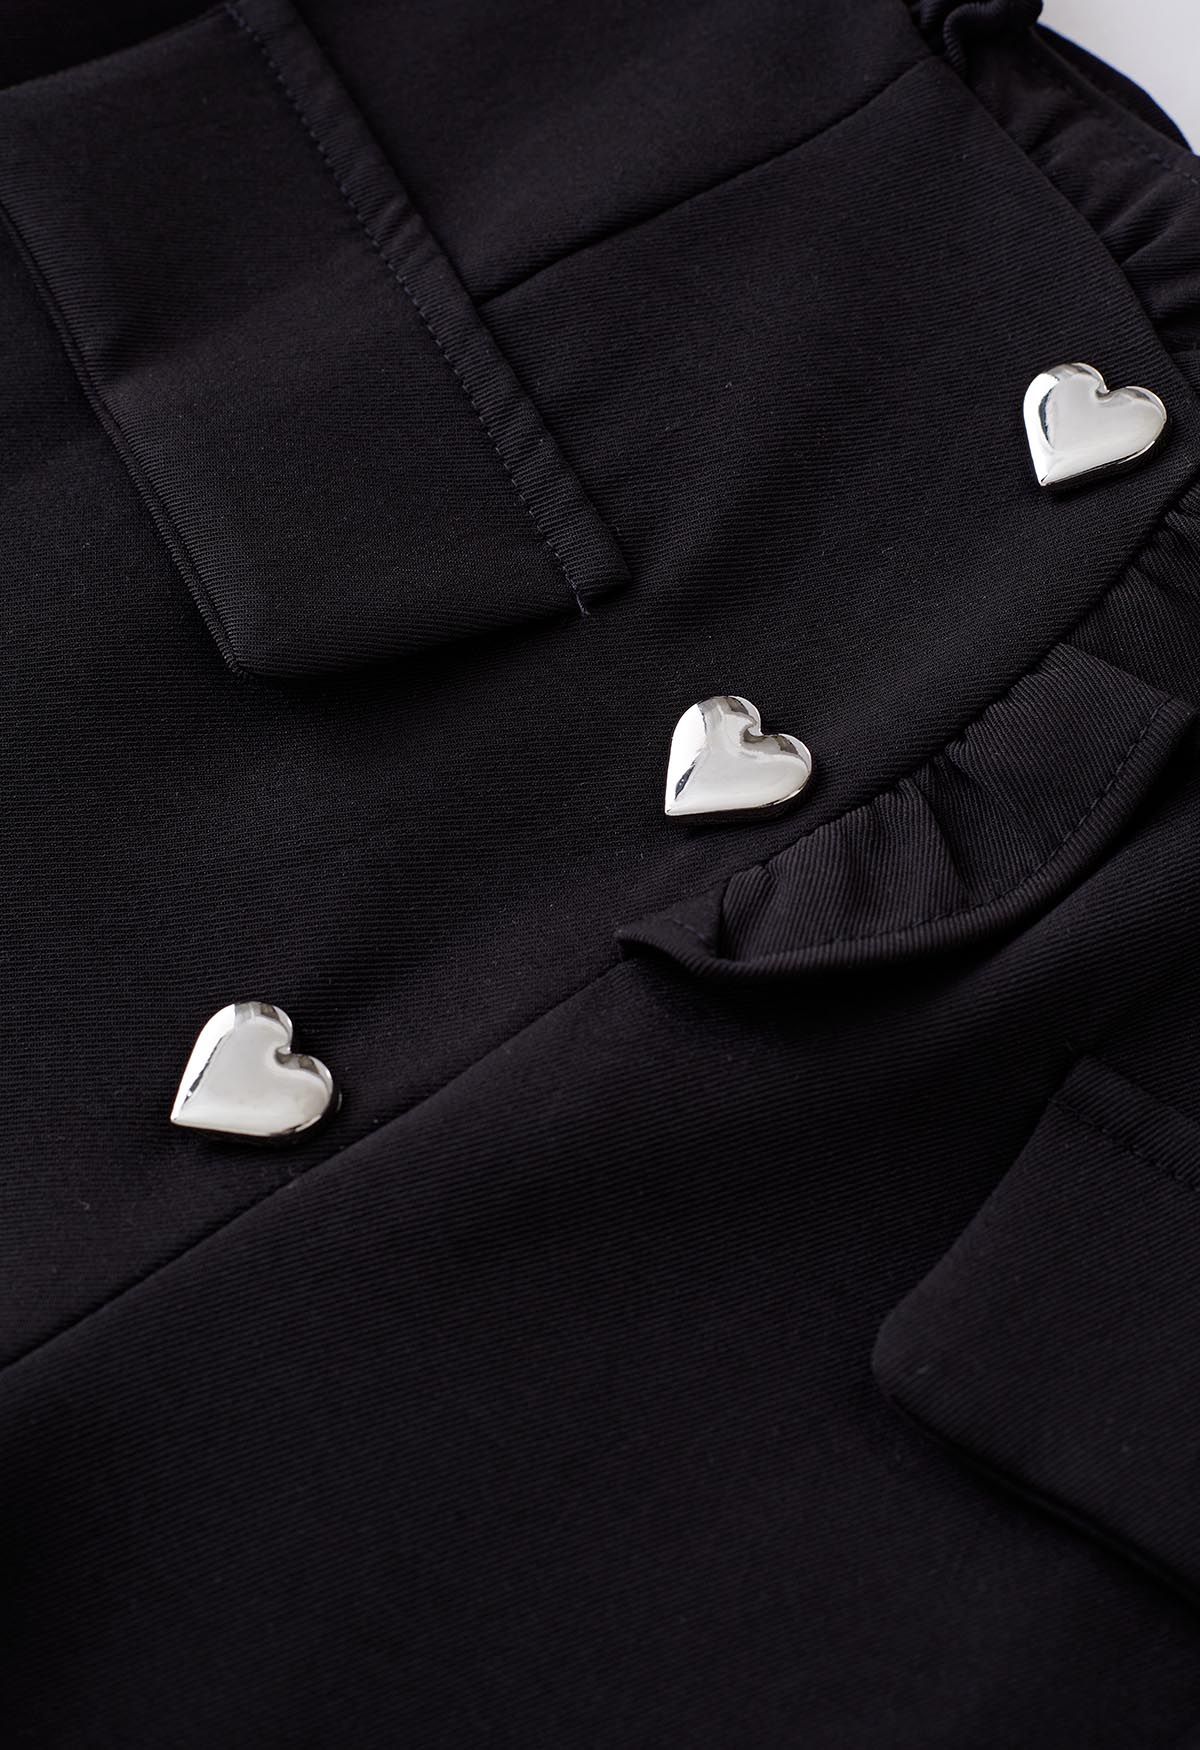 Shorts con volantes y botones en forma de corazón en negro